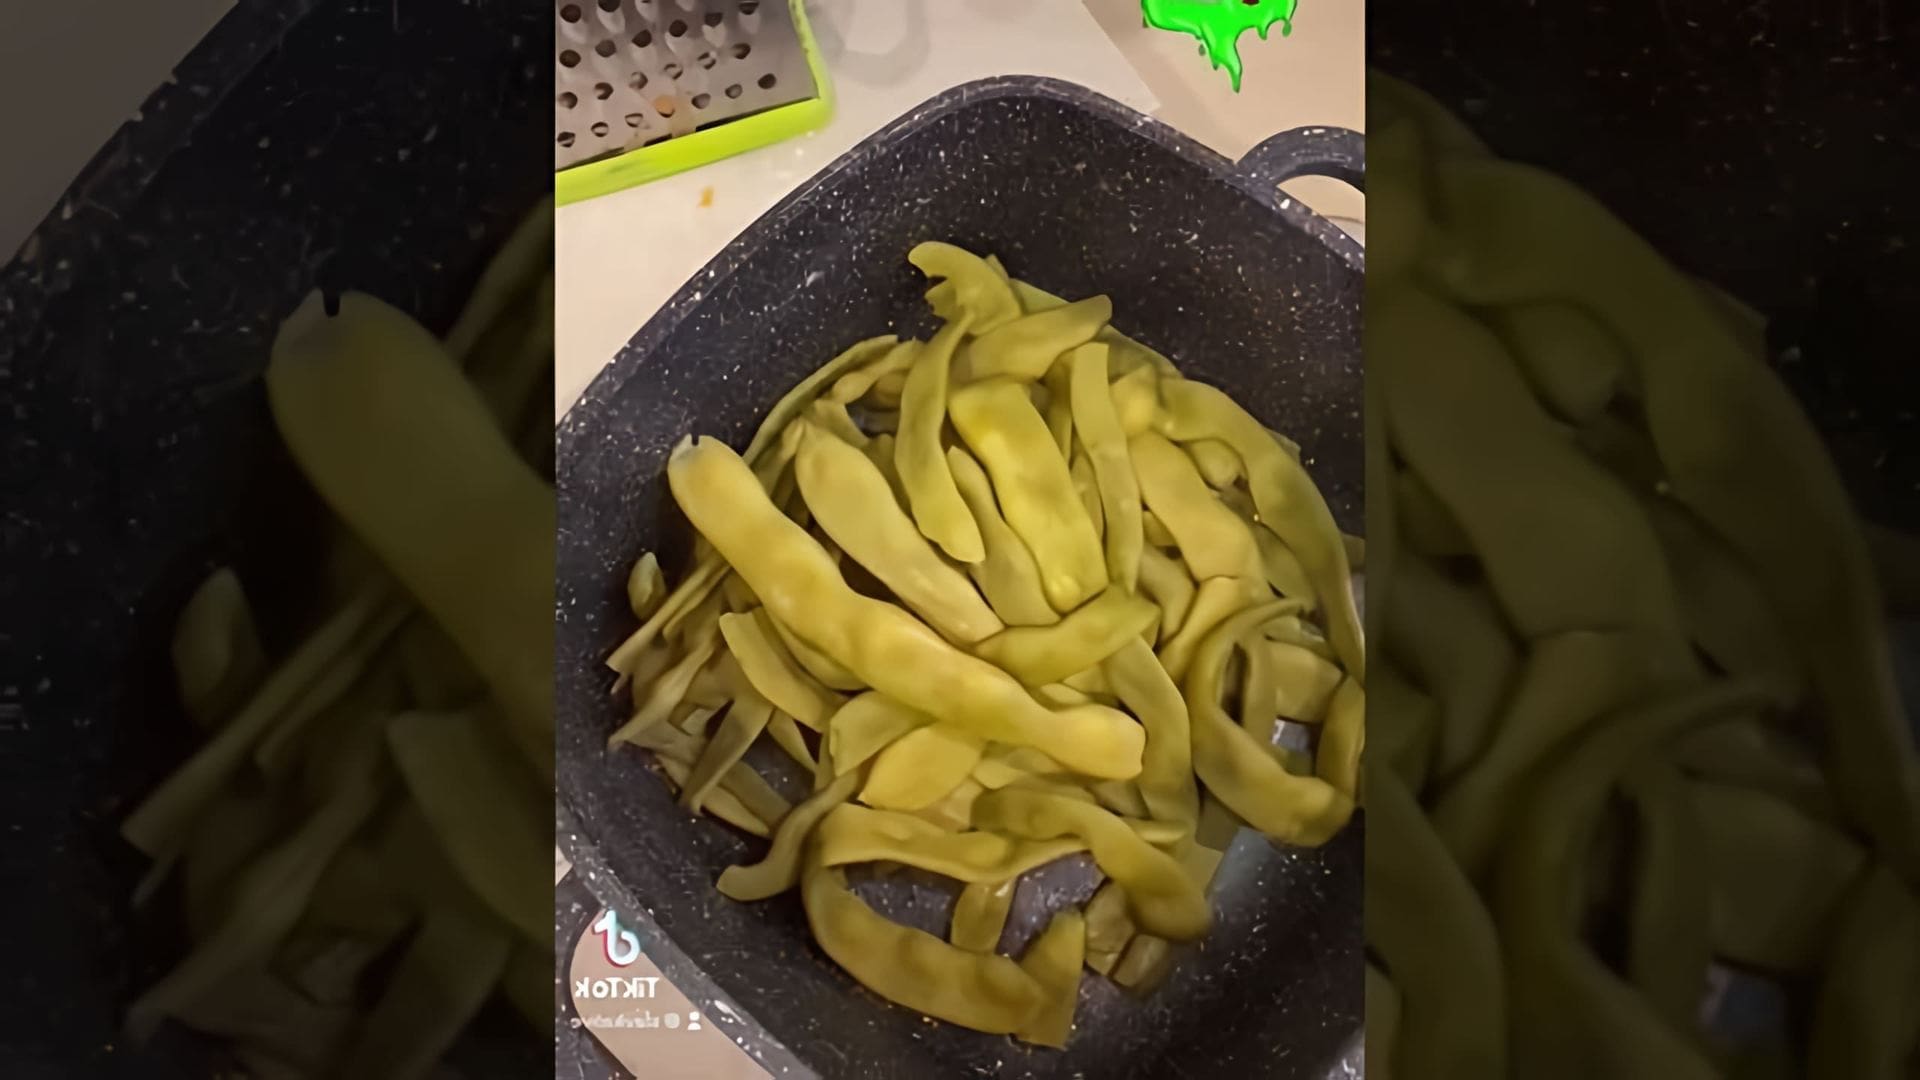 Рецепт быстро и вкусно: Молодые стручки фасоли

В этом видео-ролике я покажу, как приготовить вкусное и быстрое блюдо из молодых стручков фасоли